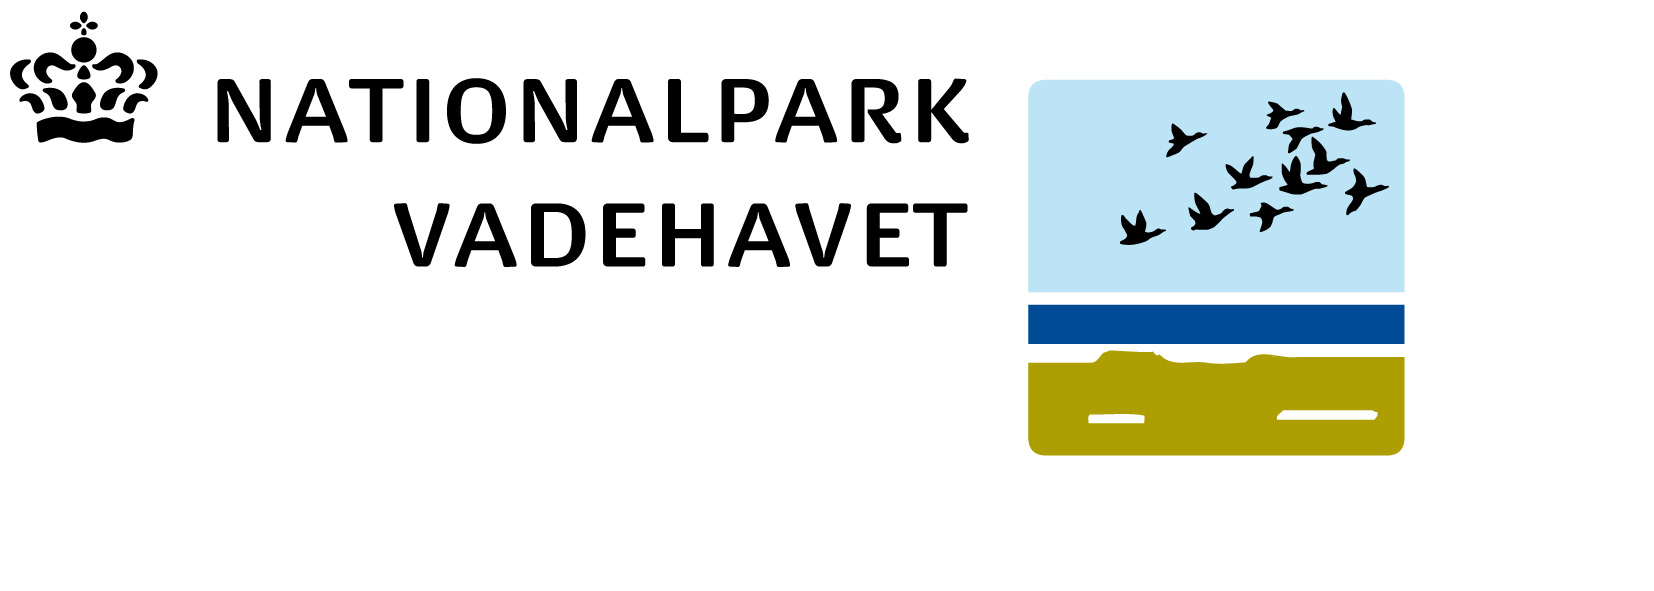 Endeligt referat Udsendt 27. juni 2013 Møde i Nationalparkbestyrelsen 12. juni 2013 Mødested: Endrup Møllekro, Bygaden 74, 6740 Bramming Mødet fandt sted fra kl. 16.00 til 21.